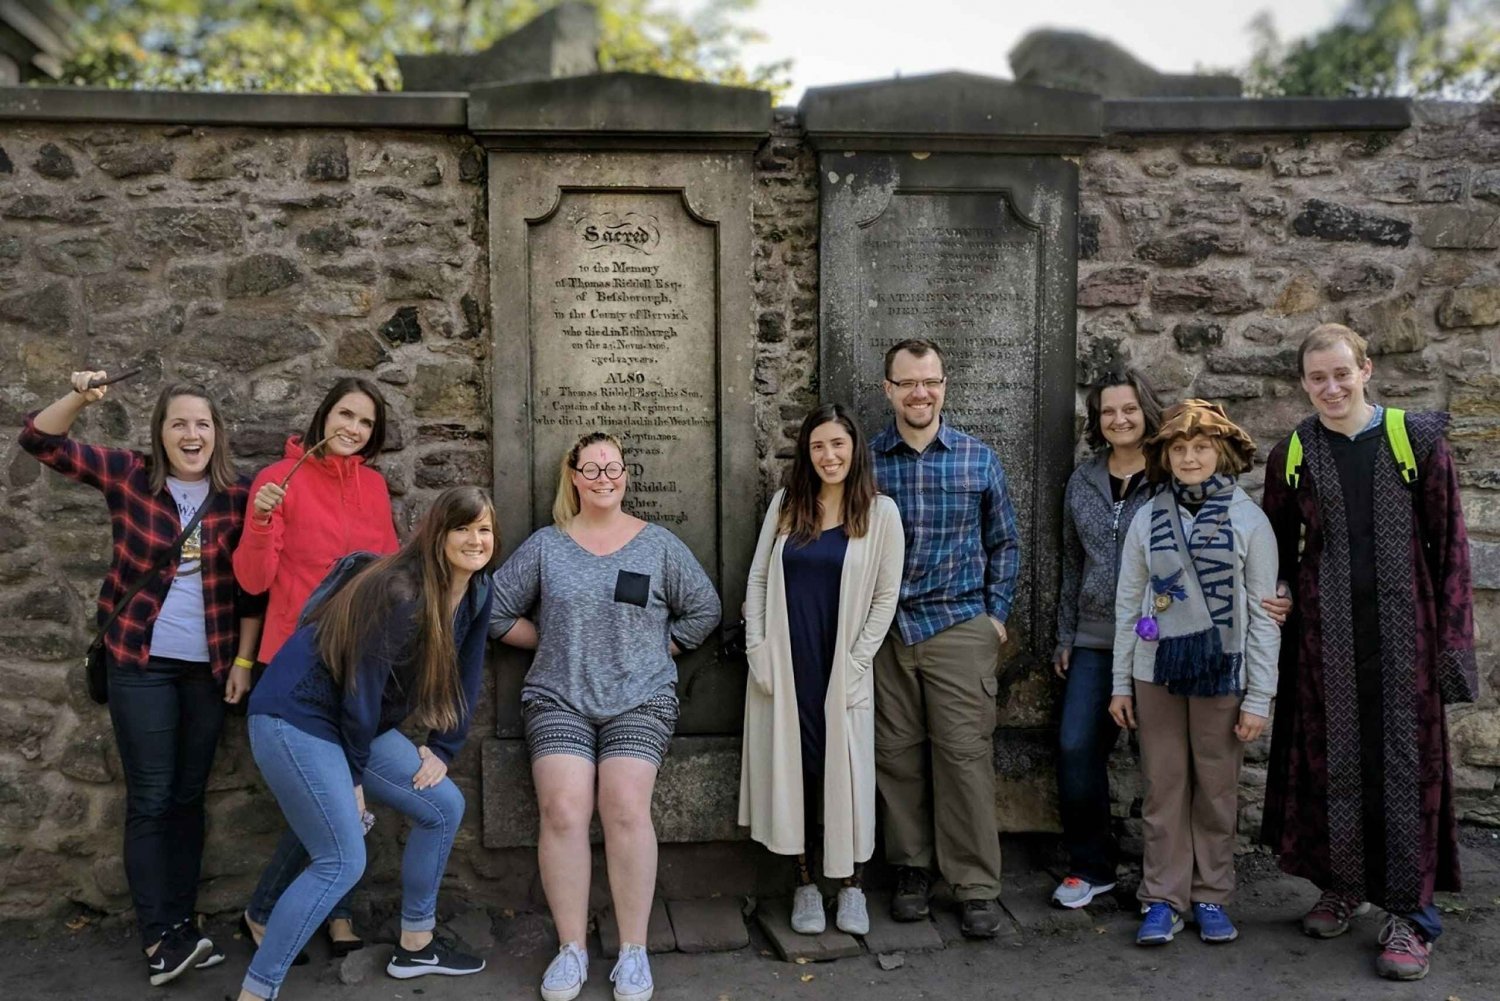 Edimburgo: tour de Harry Potter con entrada al castillo de Edimburgo